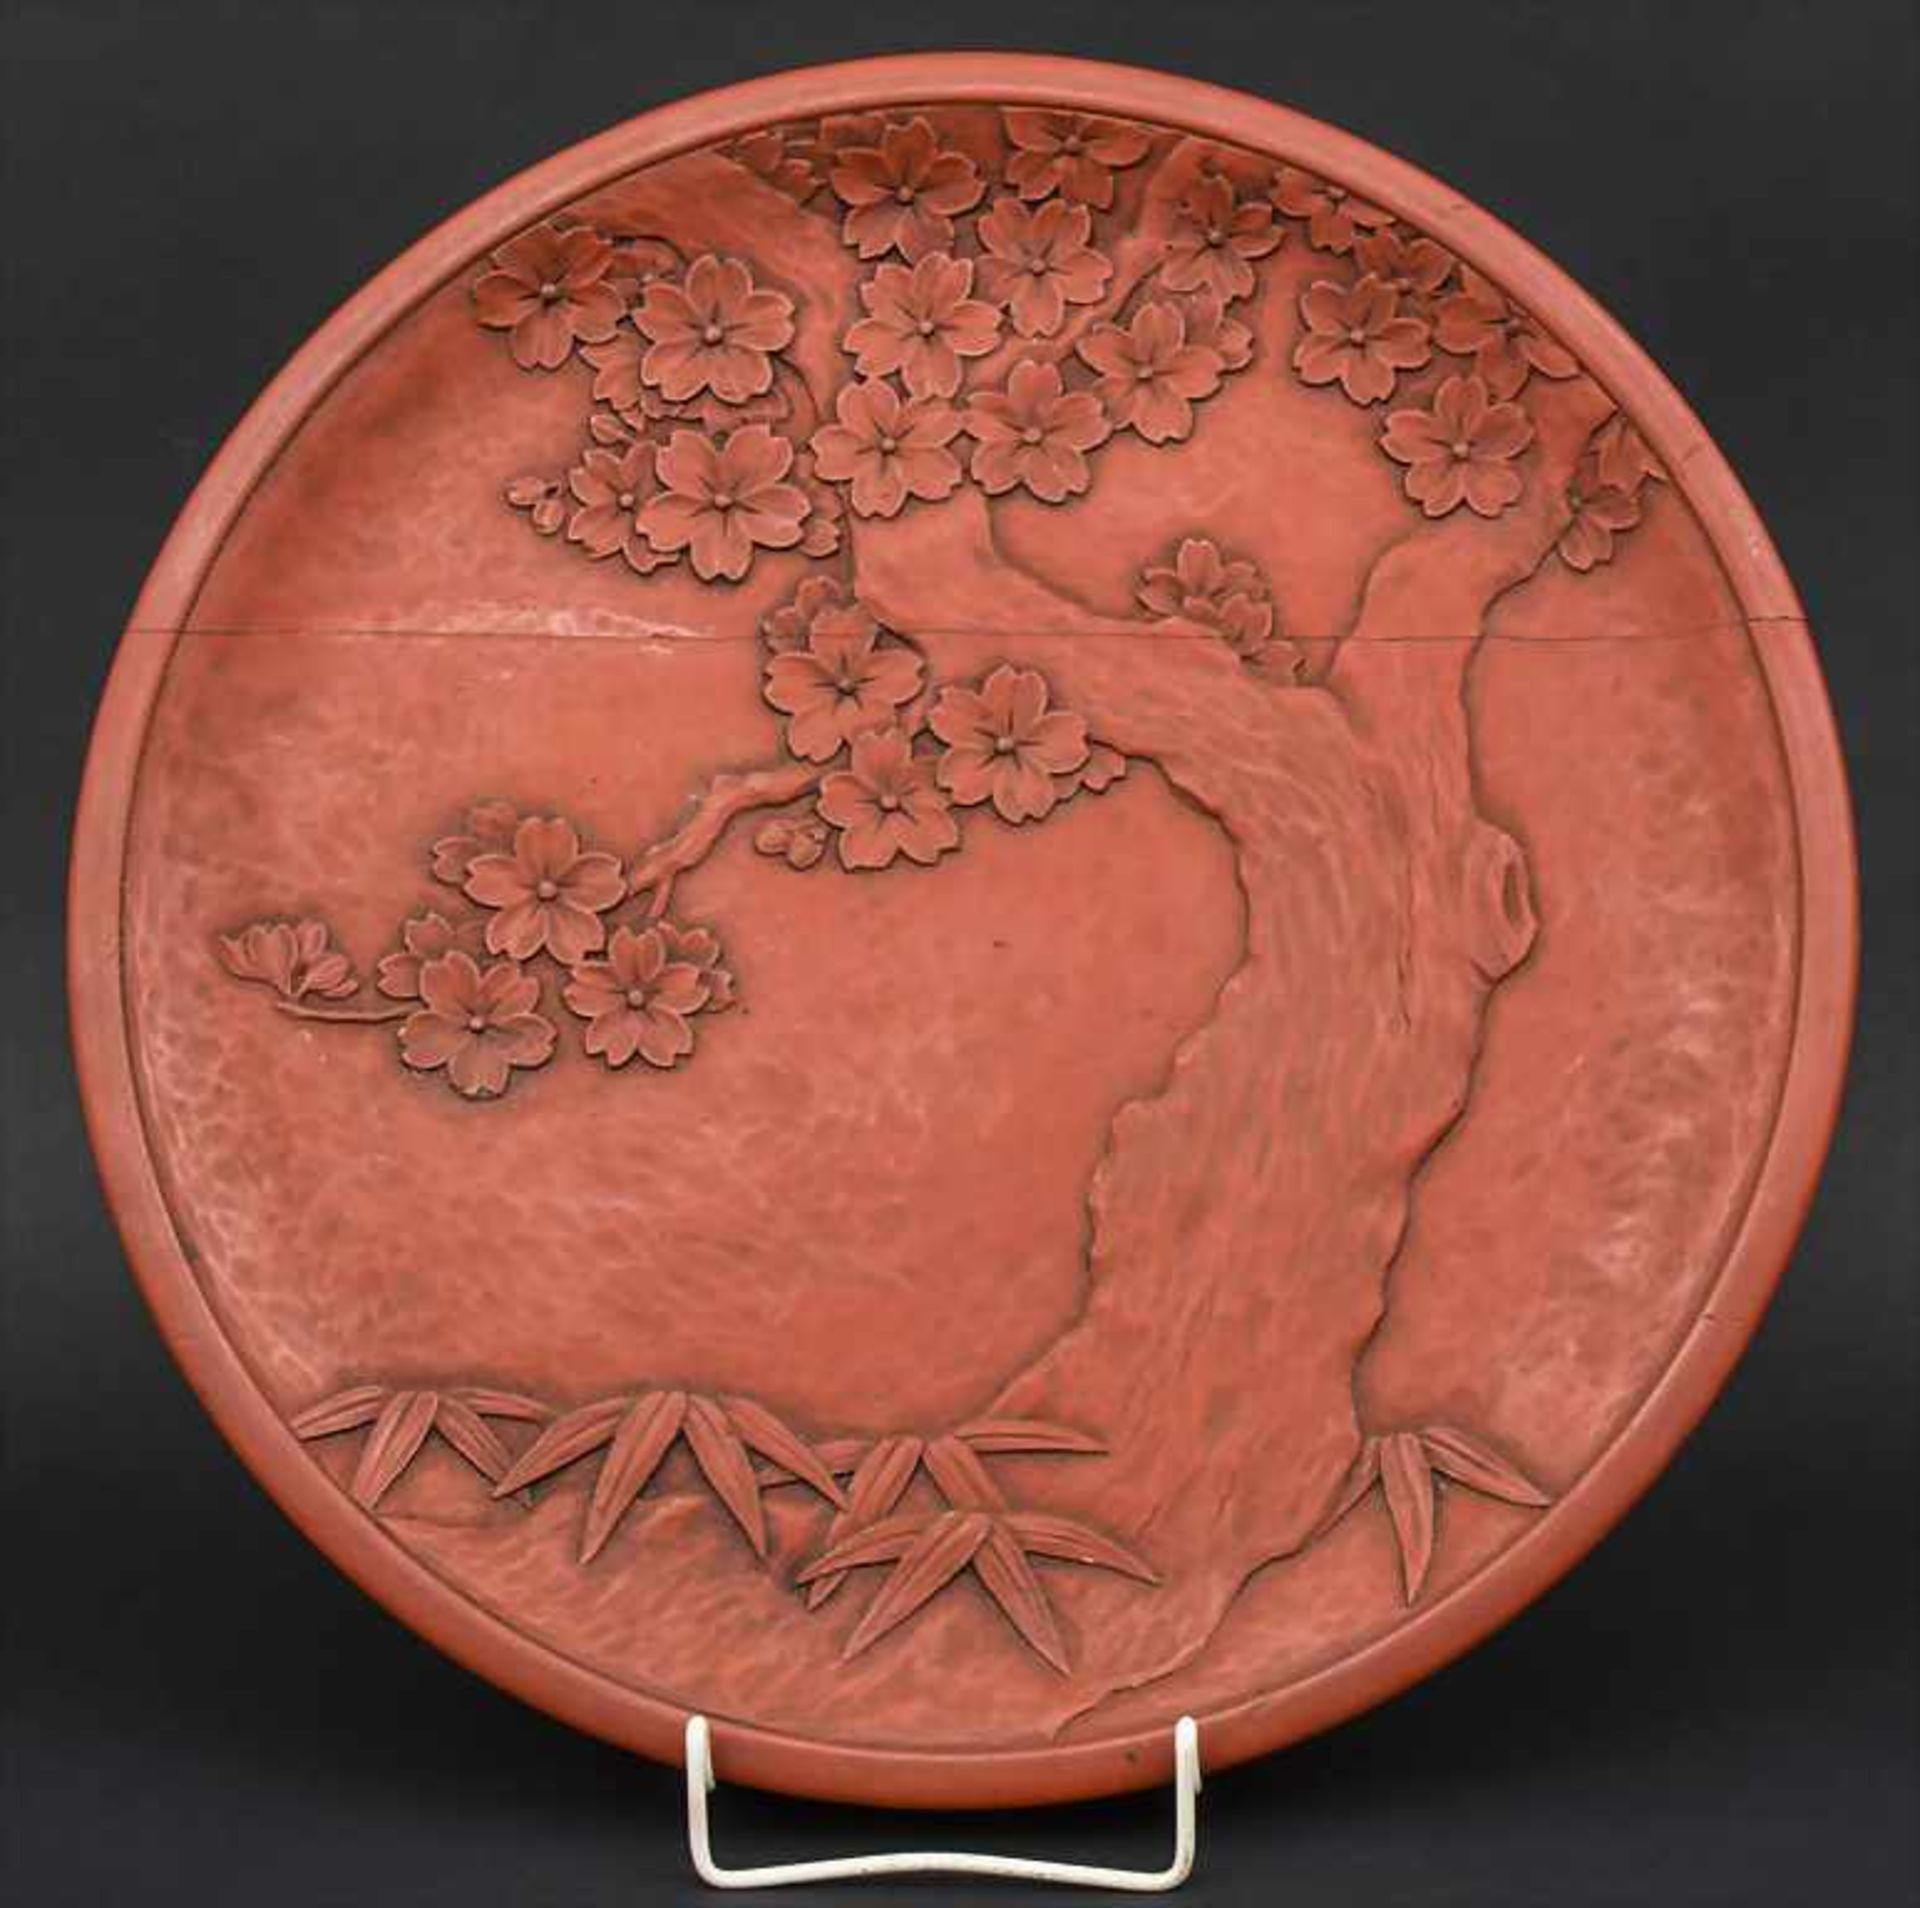 Rotlackteller / A red lacquered plate, Japan, um 1920 Material: Holz beschnitzt mit blühendem Baum